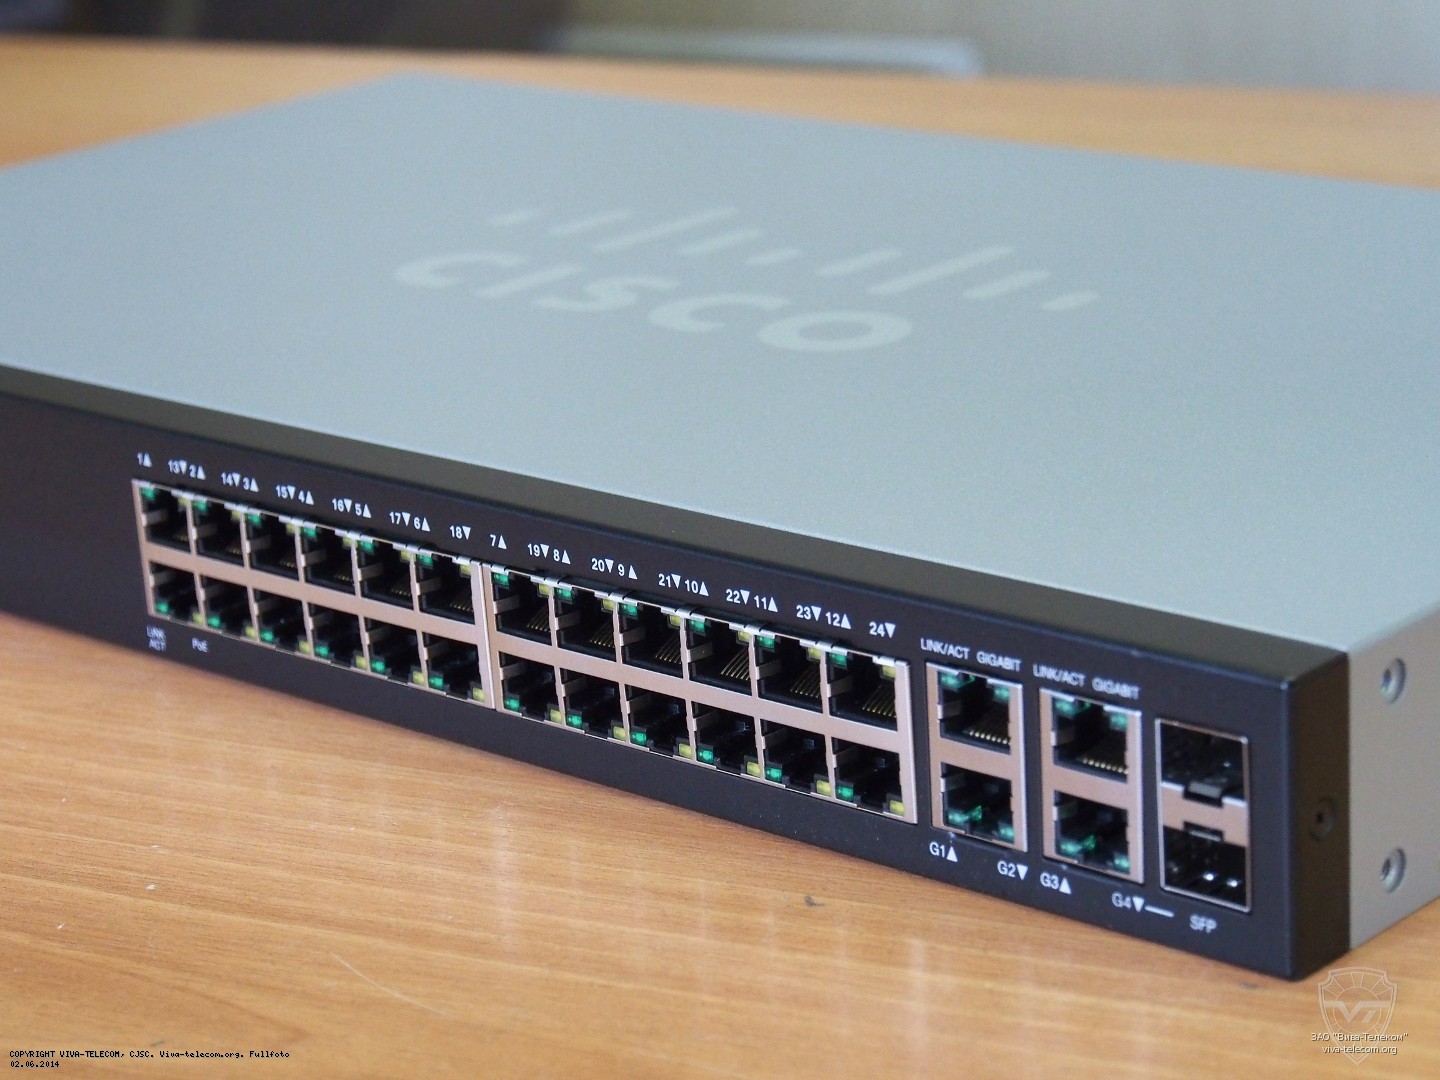    Cisco SF300-24P 